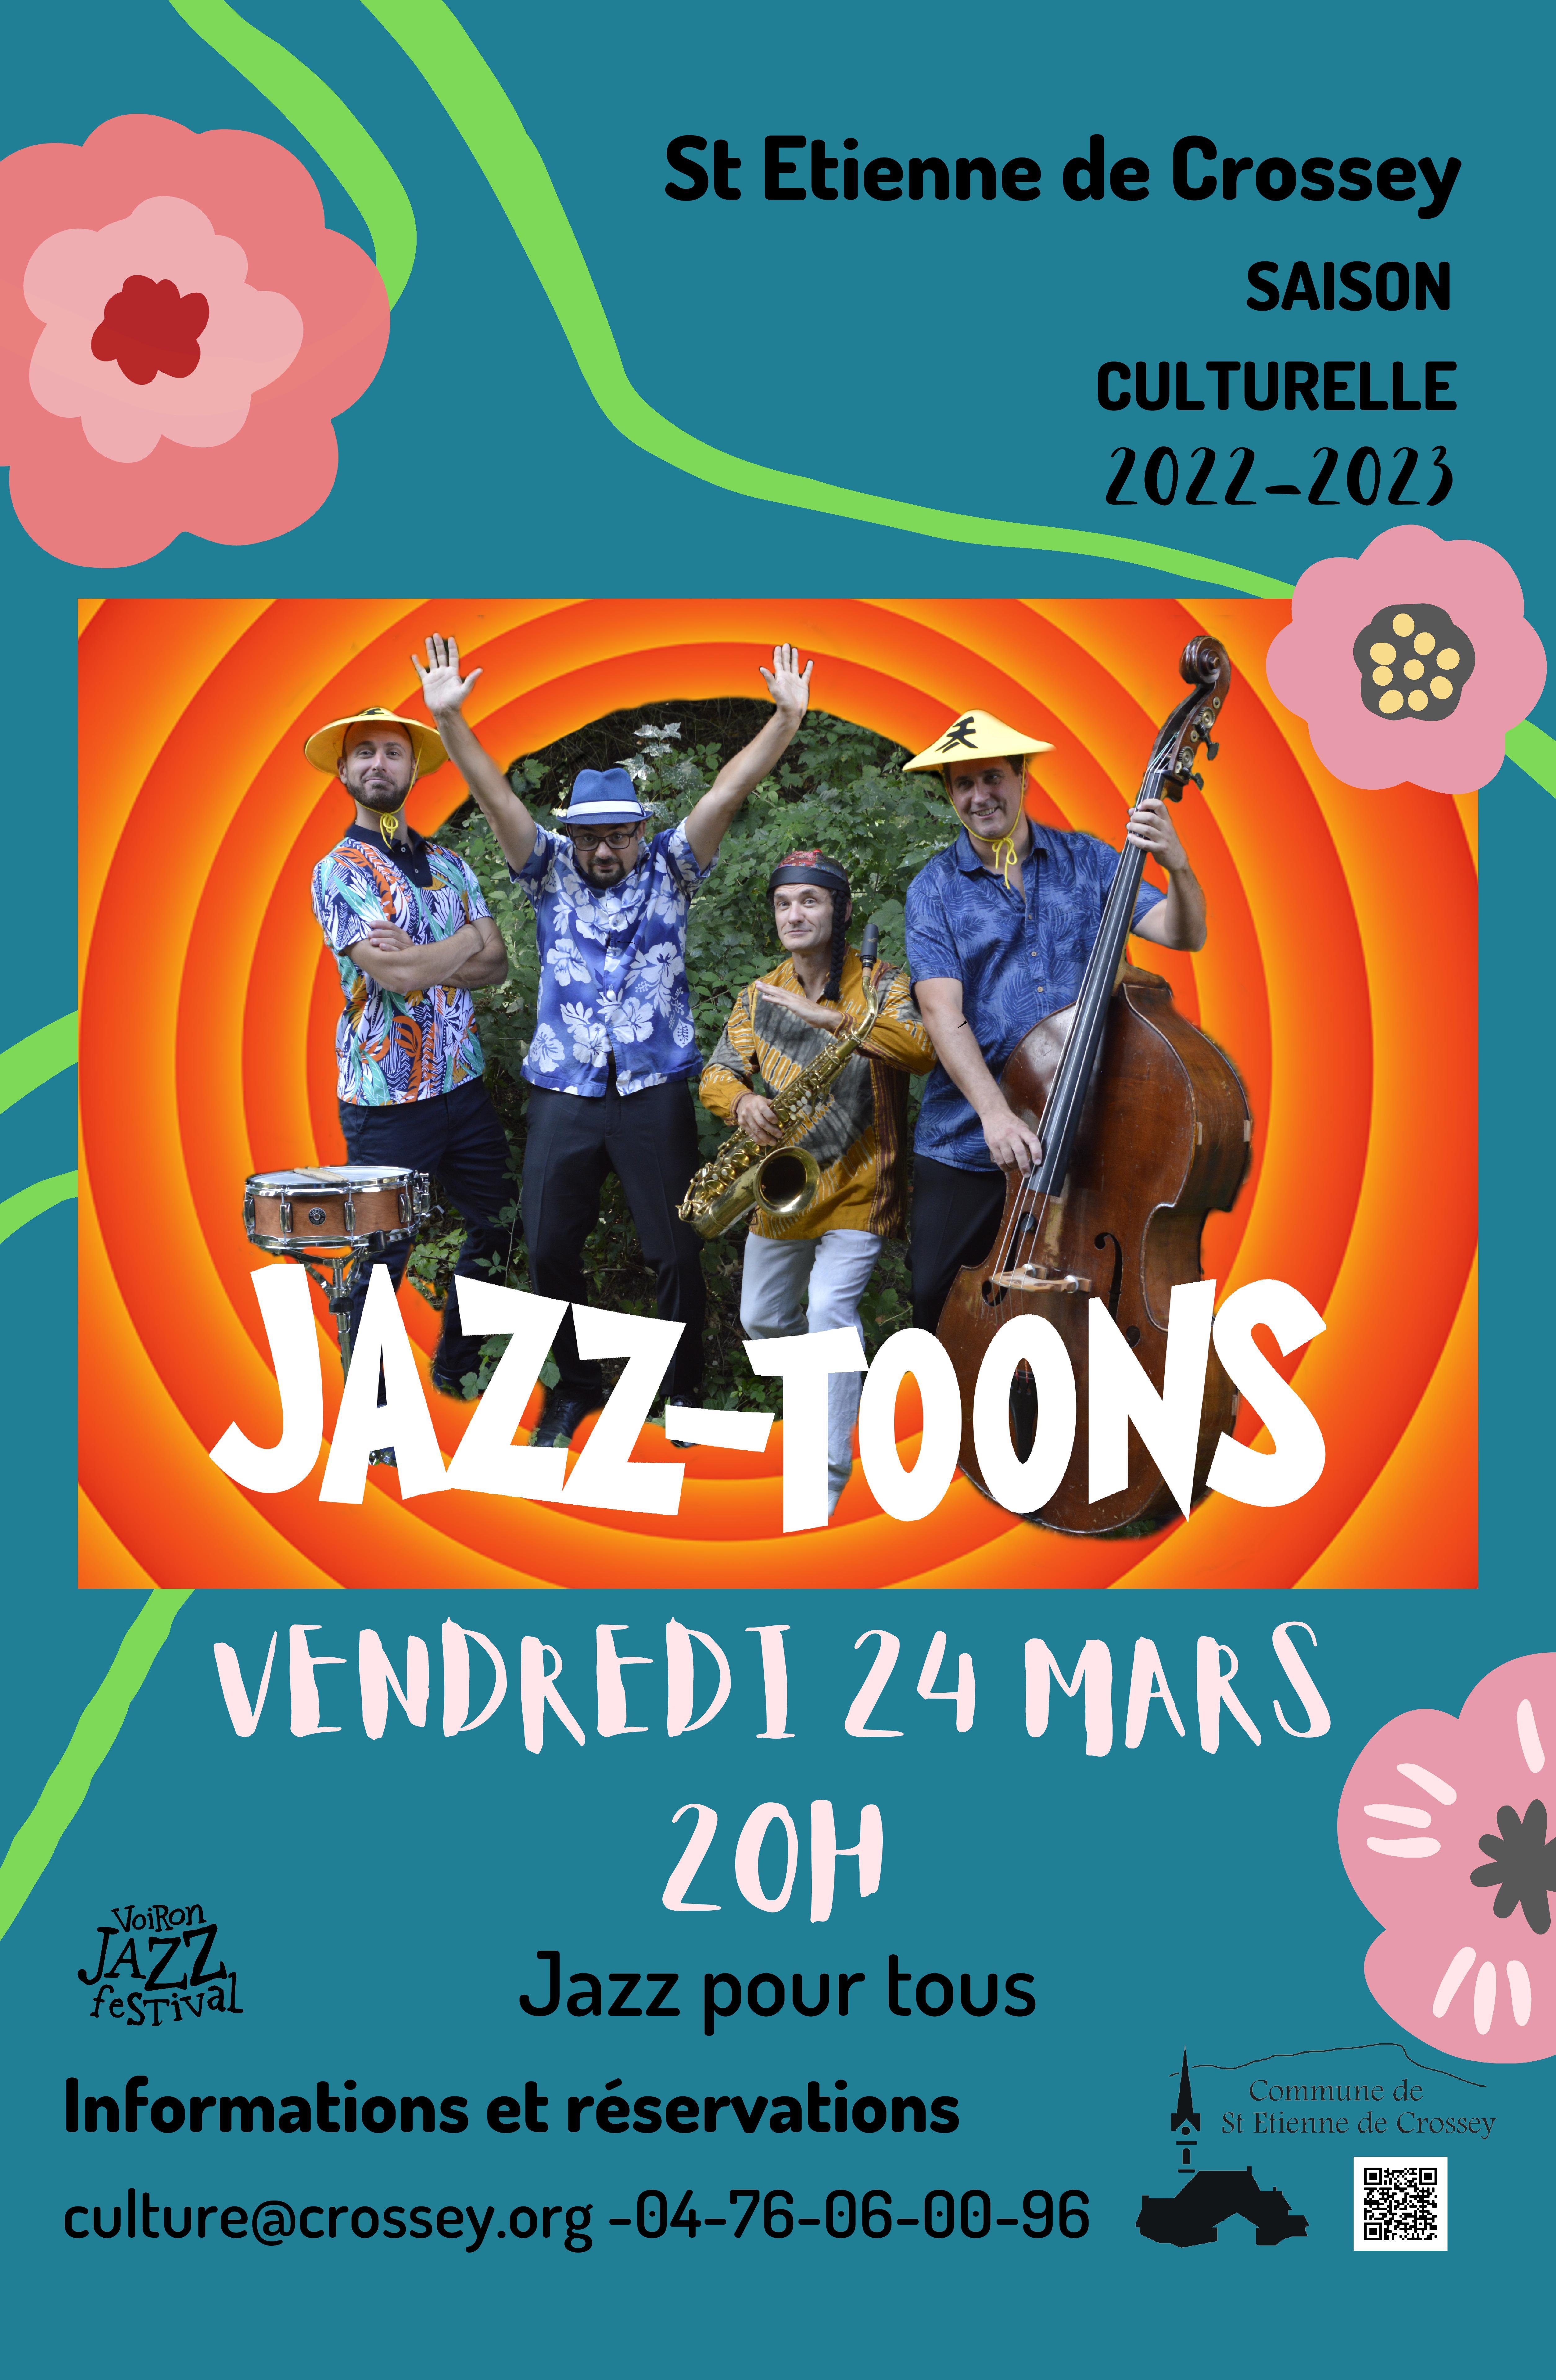 Image de couverture - Saison culturelle "Jazz-Toons"